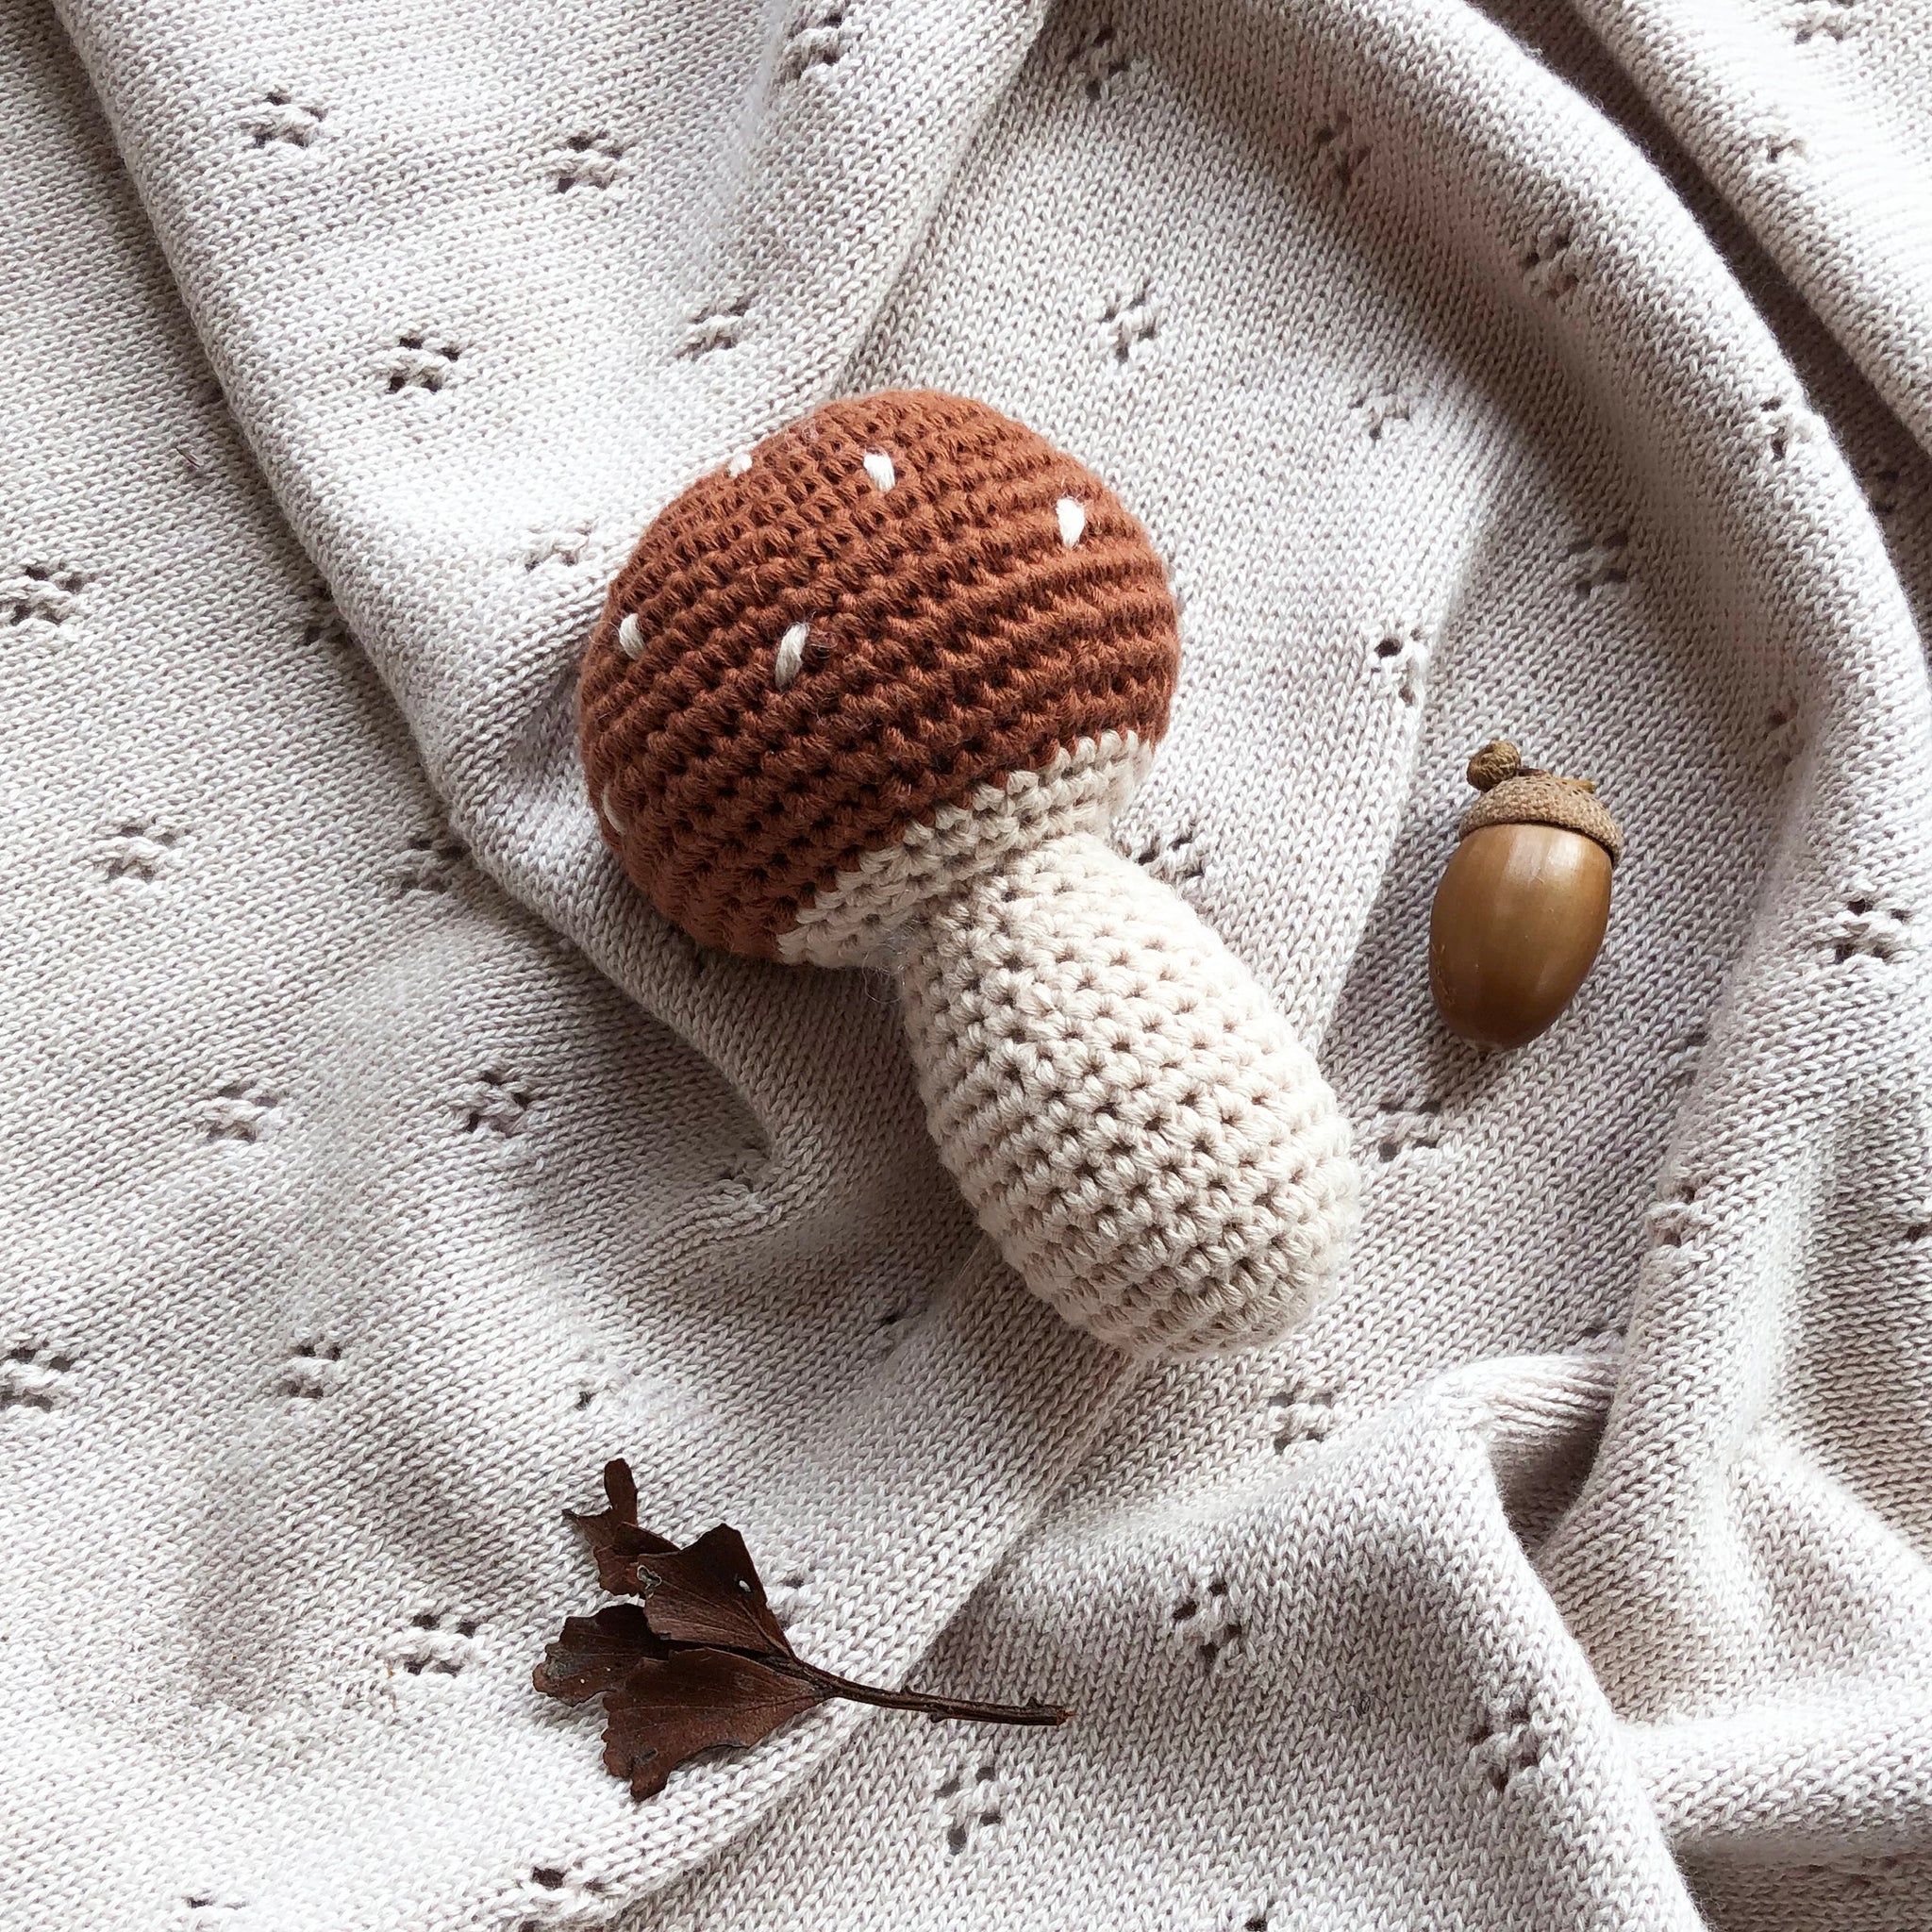 Over the Dandelions Crochet Rattle Mushroom